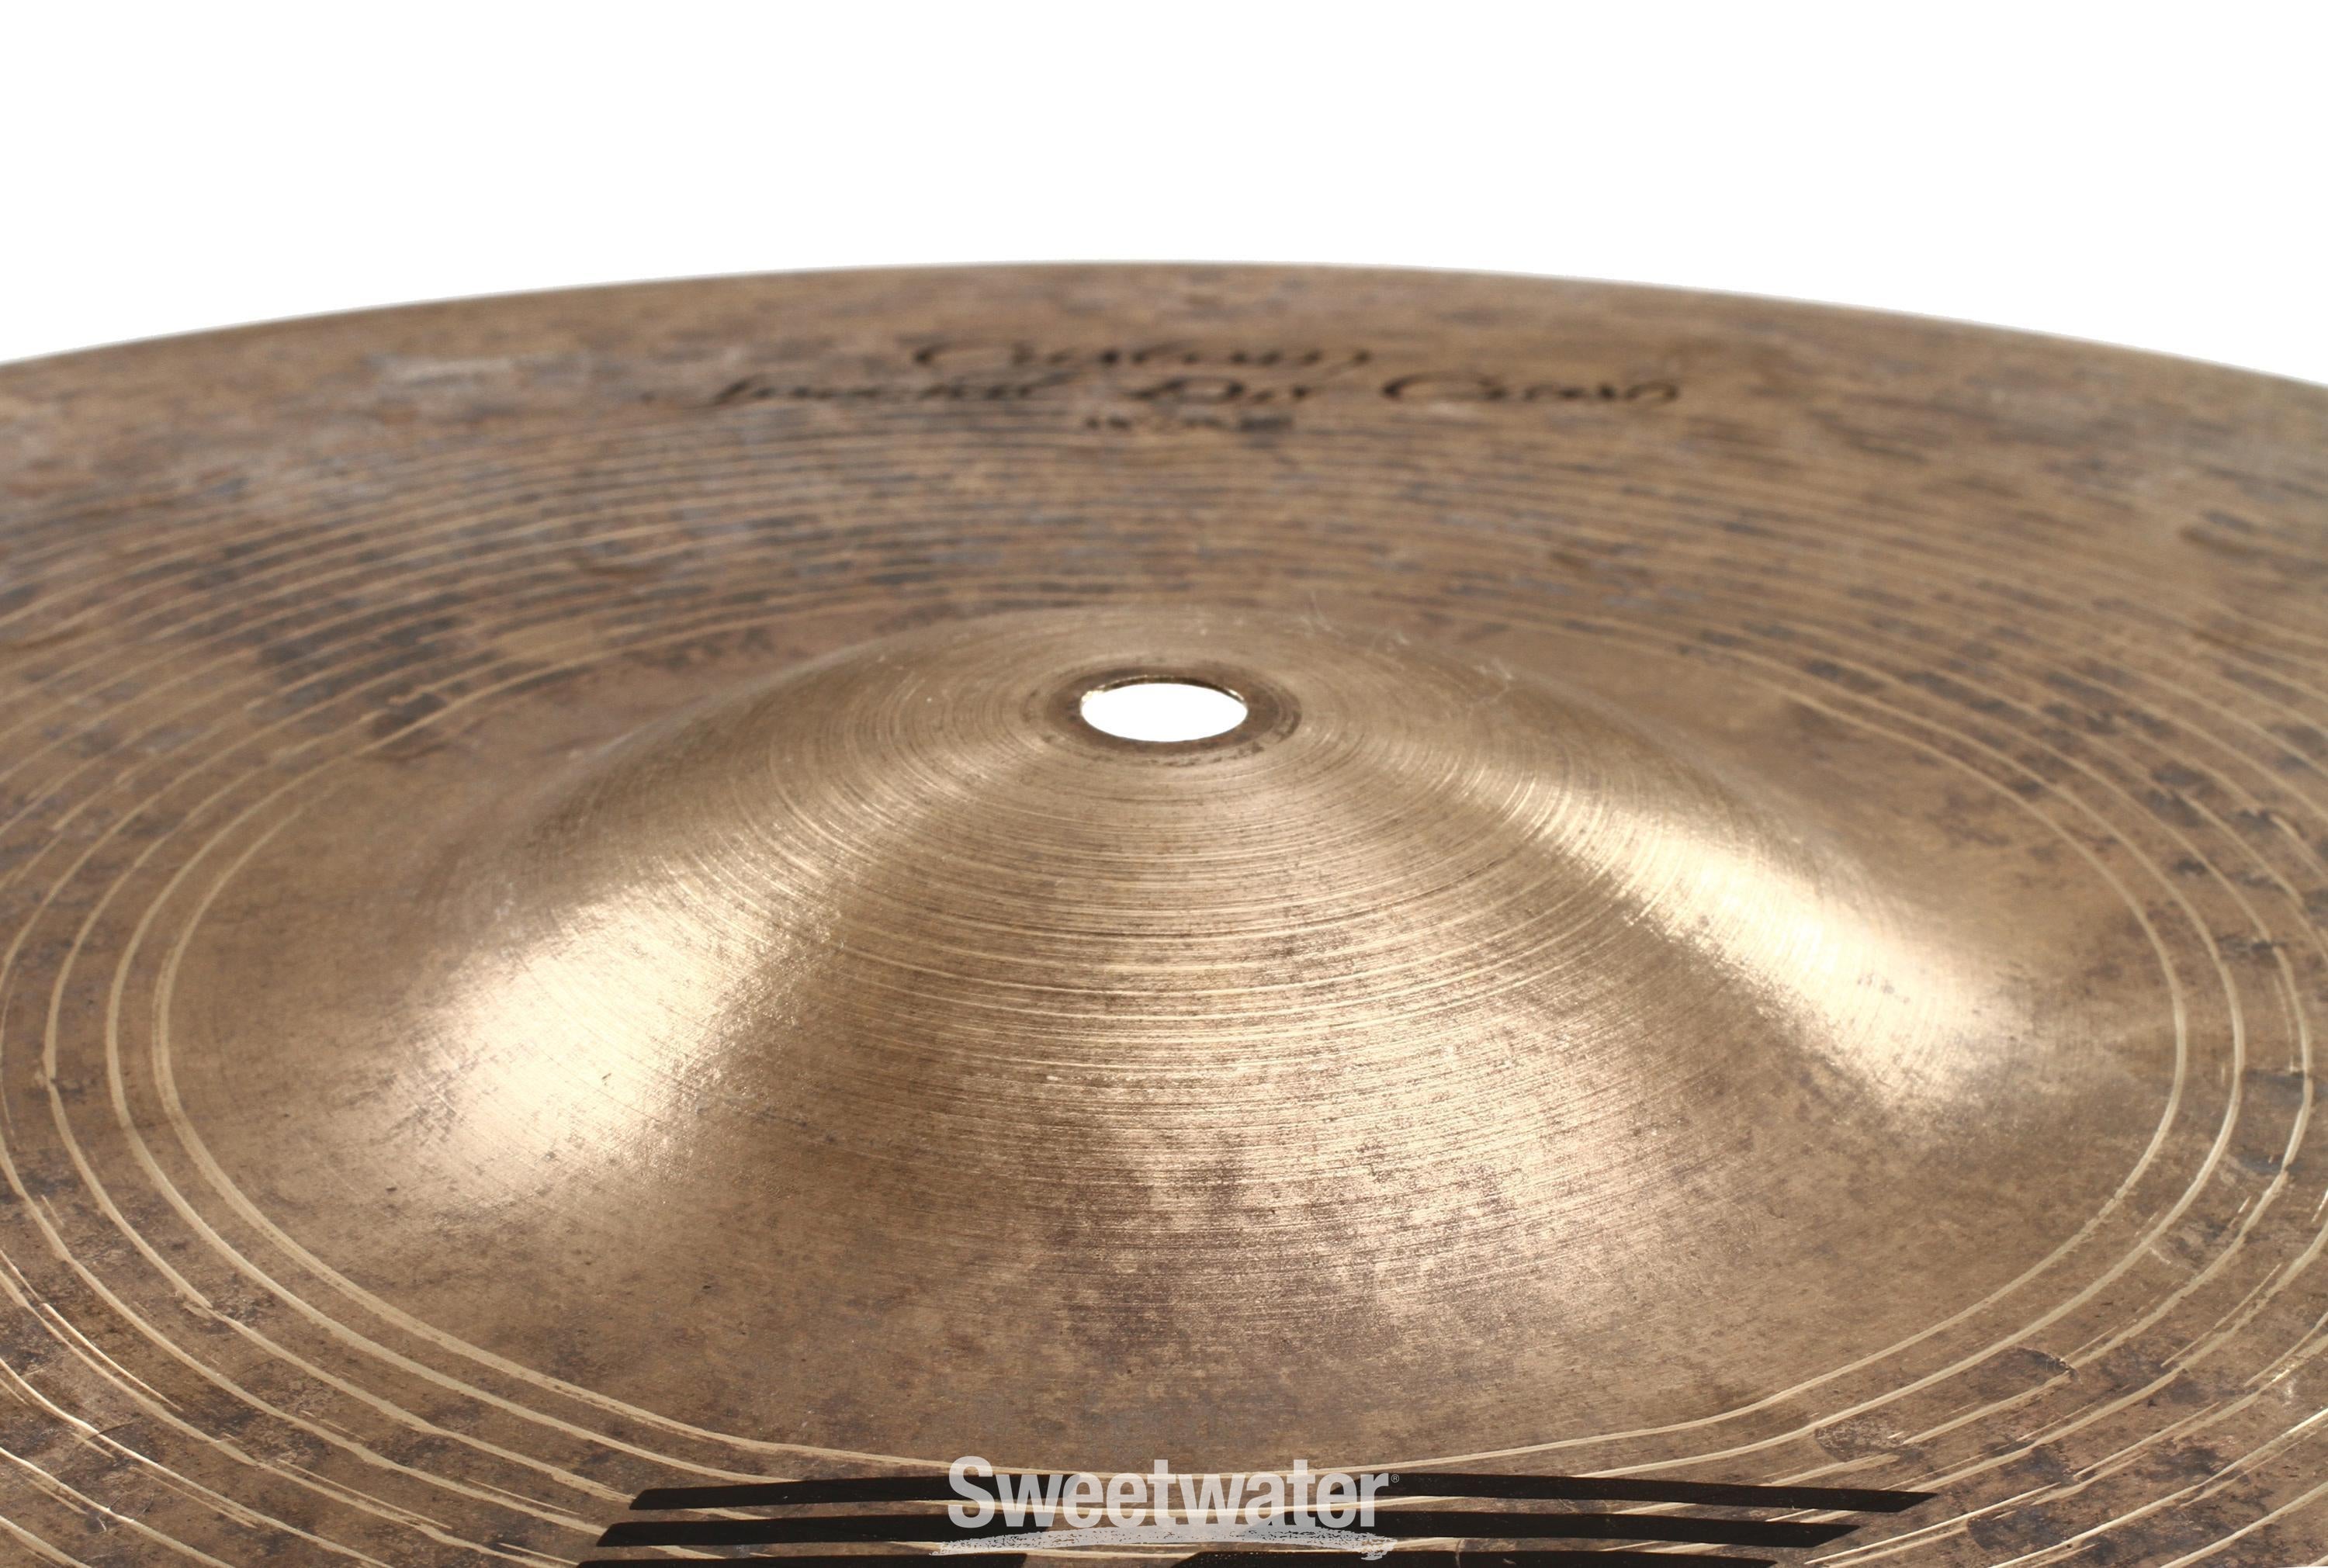 Zildjian 18 inch K Custom Special Dry Crash Cymbal